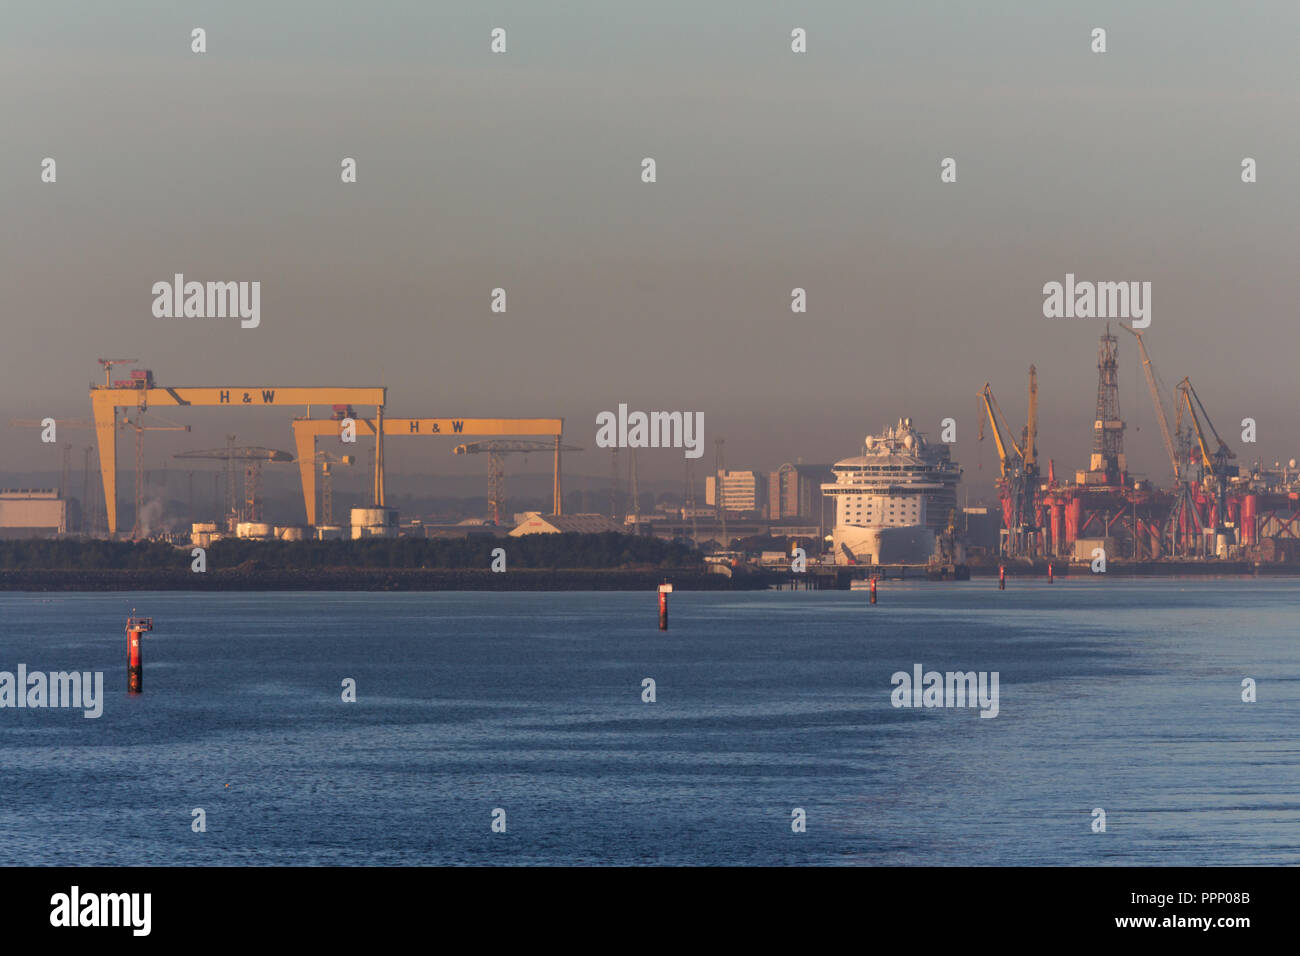 Am frühen Morgen nebligen Blick auf Belfast Docks, Kreuzfahrtschiff und Harland & Wolff Schiffbau Krane, Samson und Goliath. Belfast Lough, N. Irland. Stockfoto